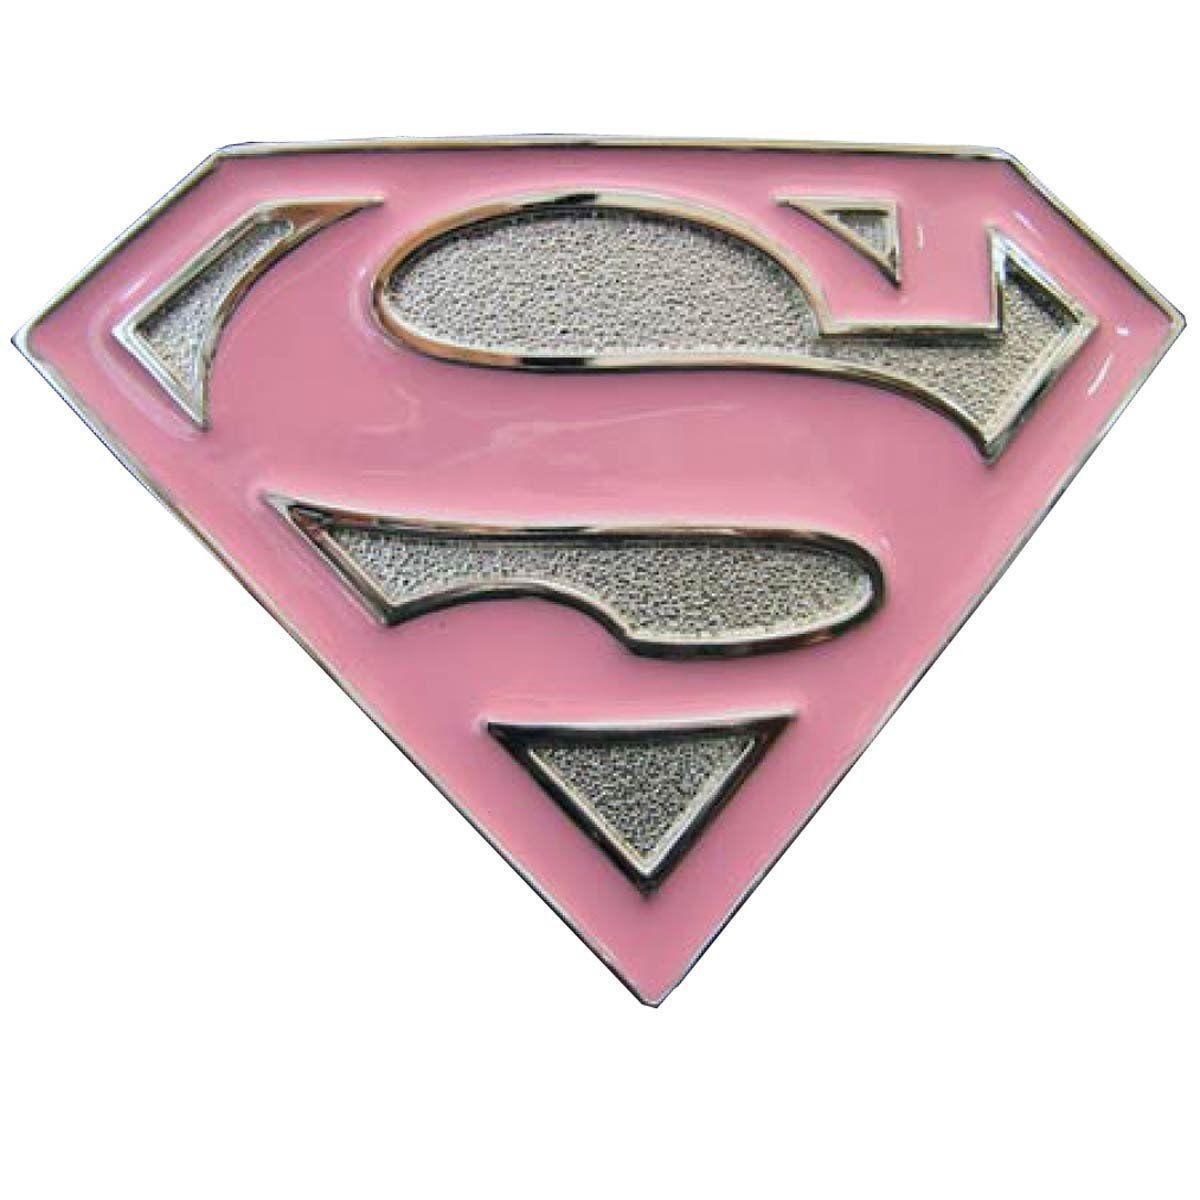 Girly Superhero Logo - Buckle with Supergirl Logo, Girly Buckle, Top Belt Buckle: Amazon.co ...